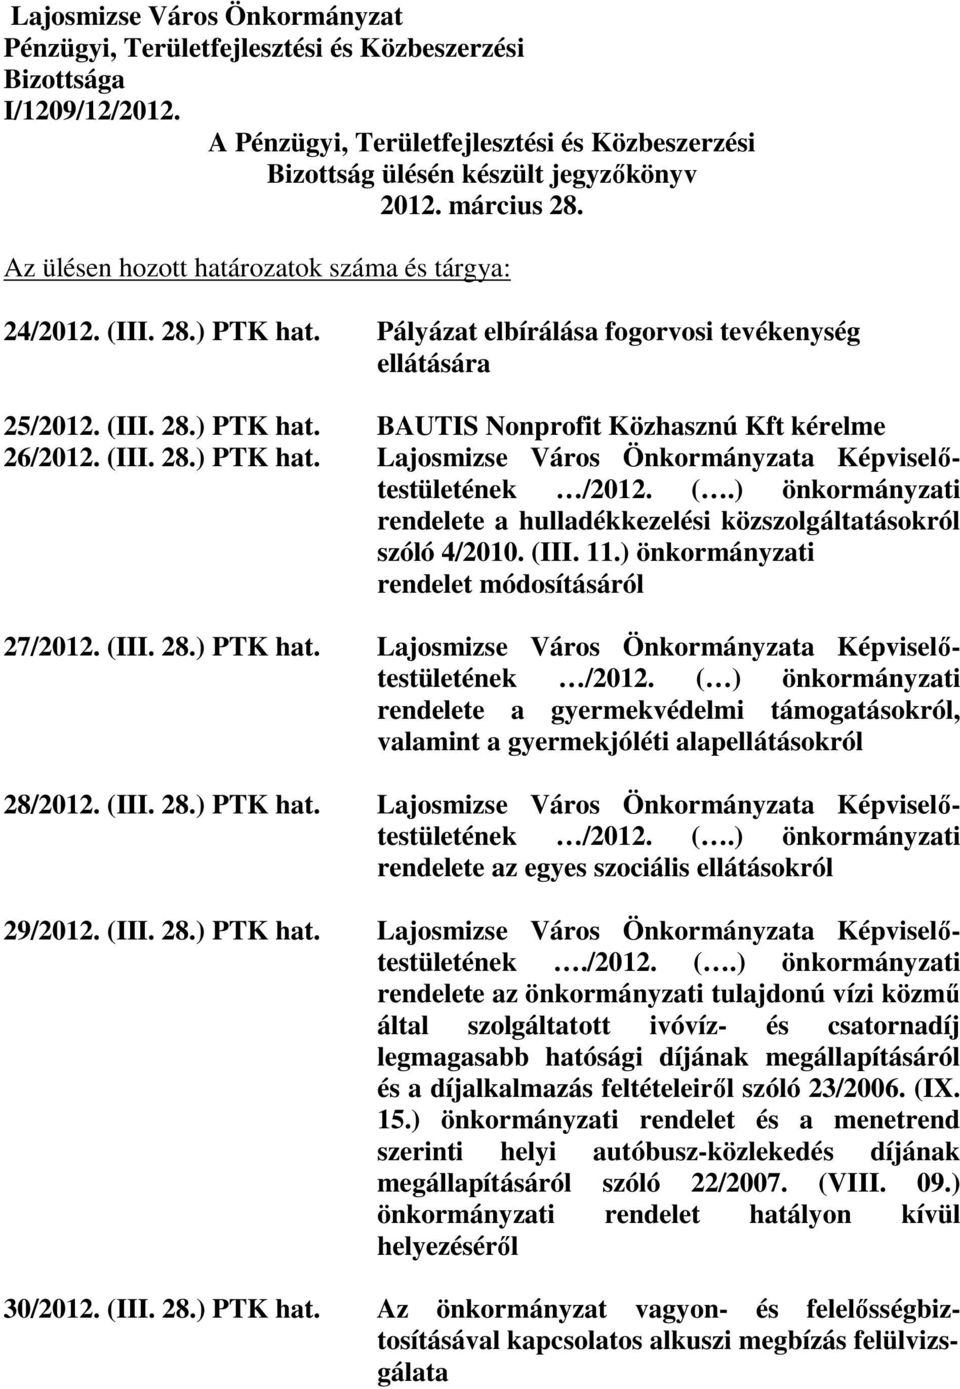 (III. 28.) PTK hat. Lajosmizse Város Önkormányzata Képviselıtestületének /2012. (.) önkormányzati rendelete a hulladékkezelési közszolgáltatásokról szóló 4/2010. (III. 11.